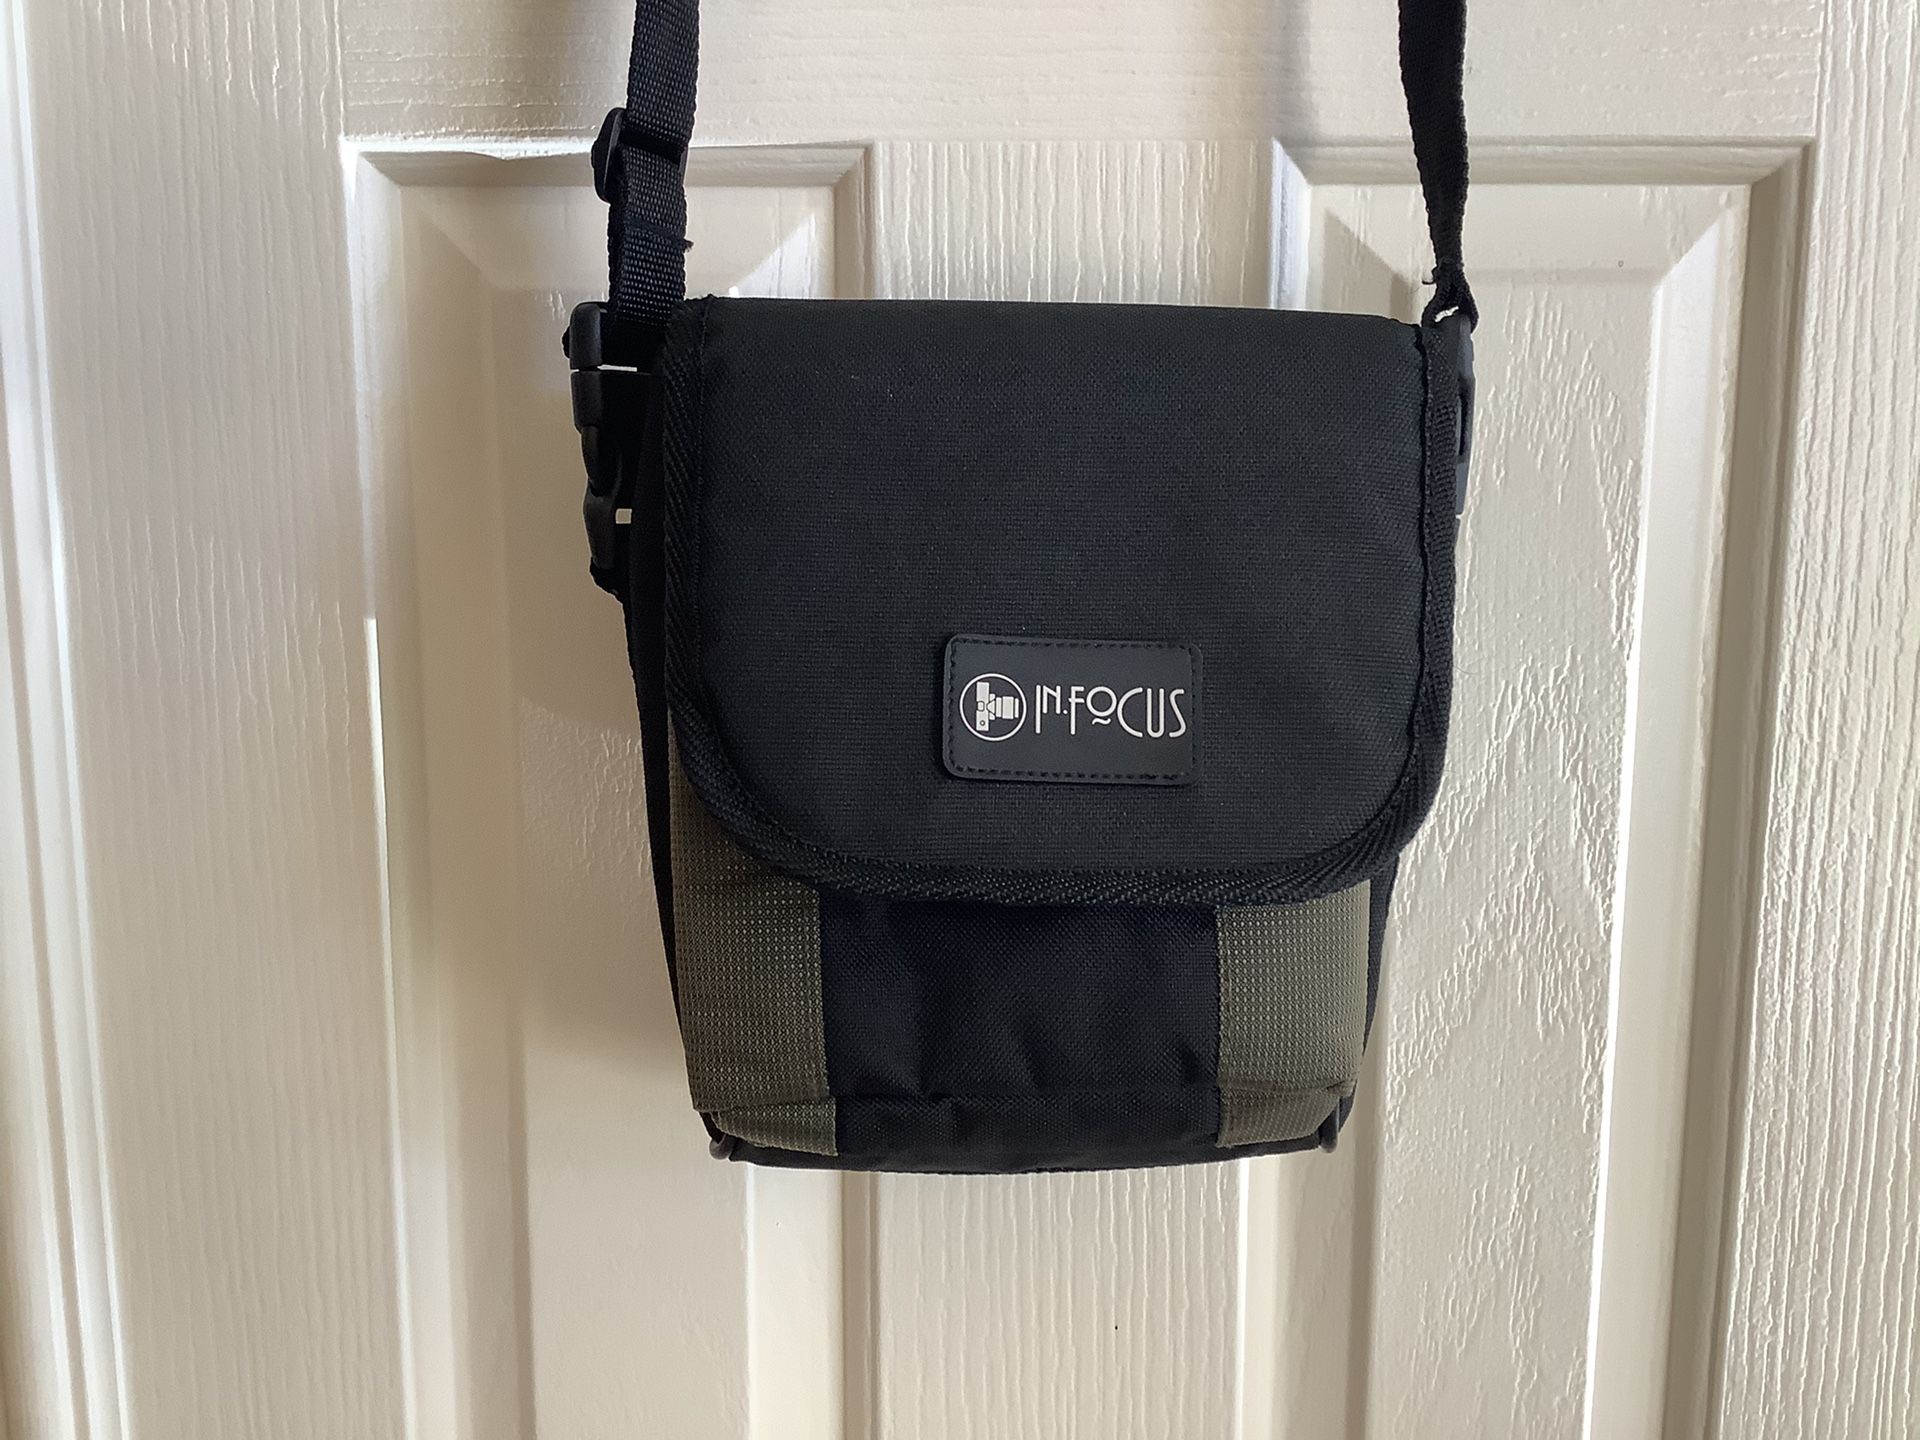 InFocus Padded Camera bag with adjustable shoulder strap and belt loop.